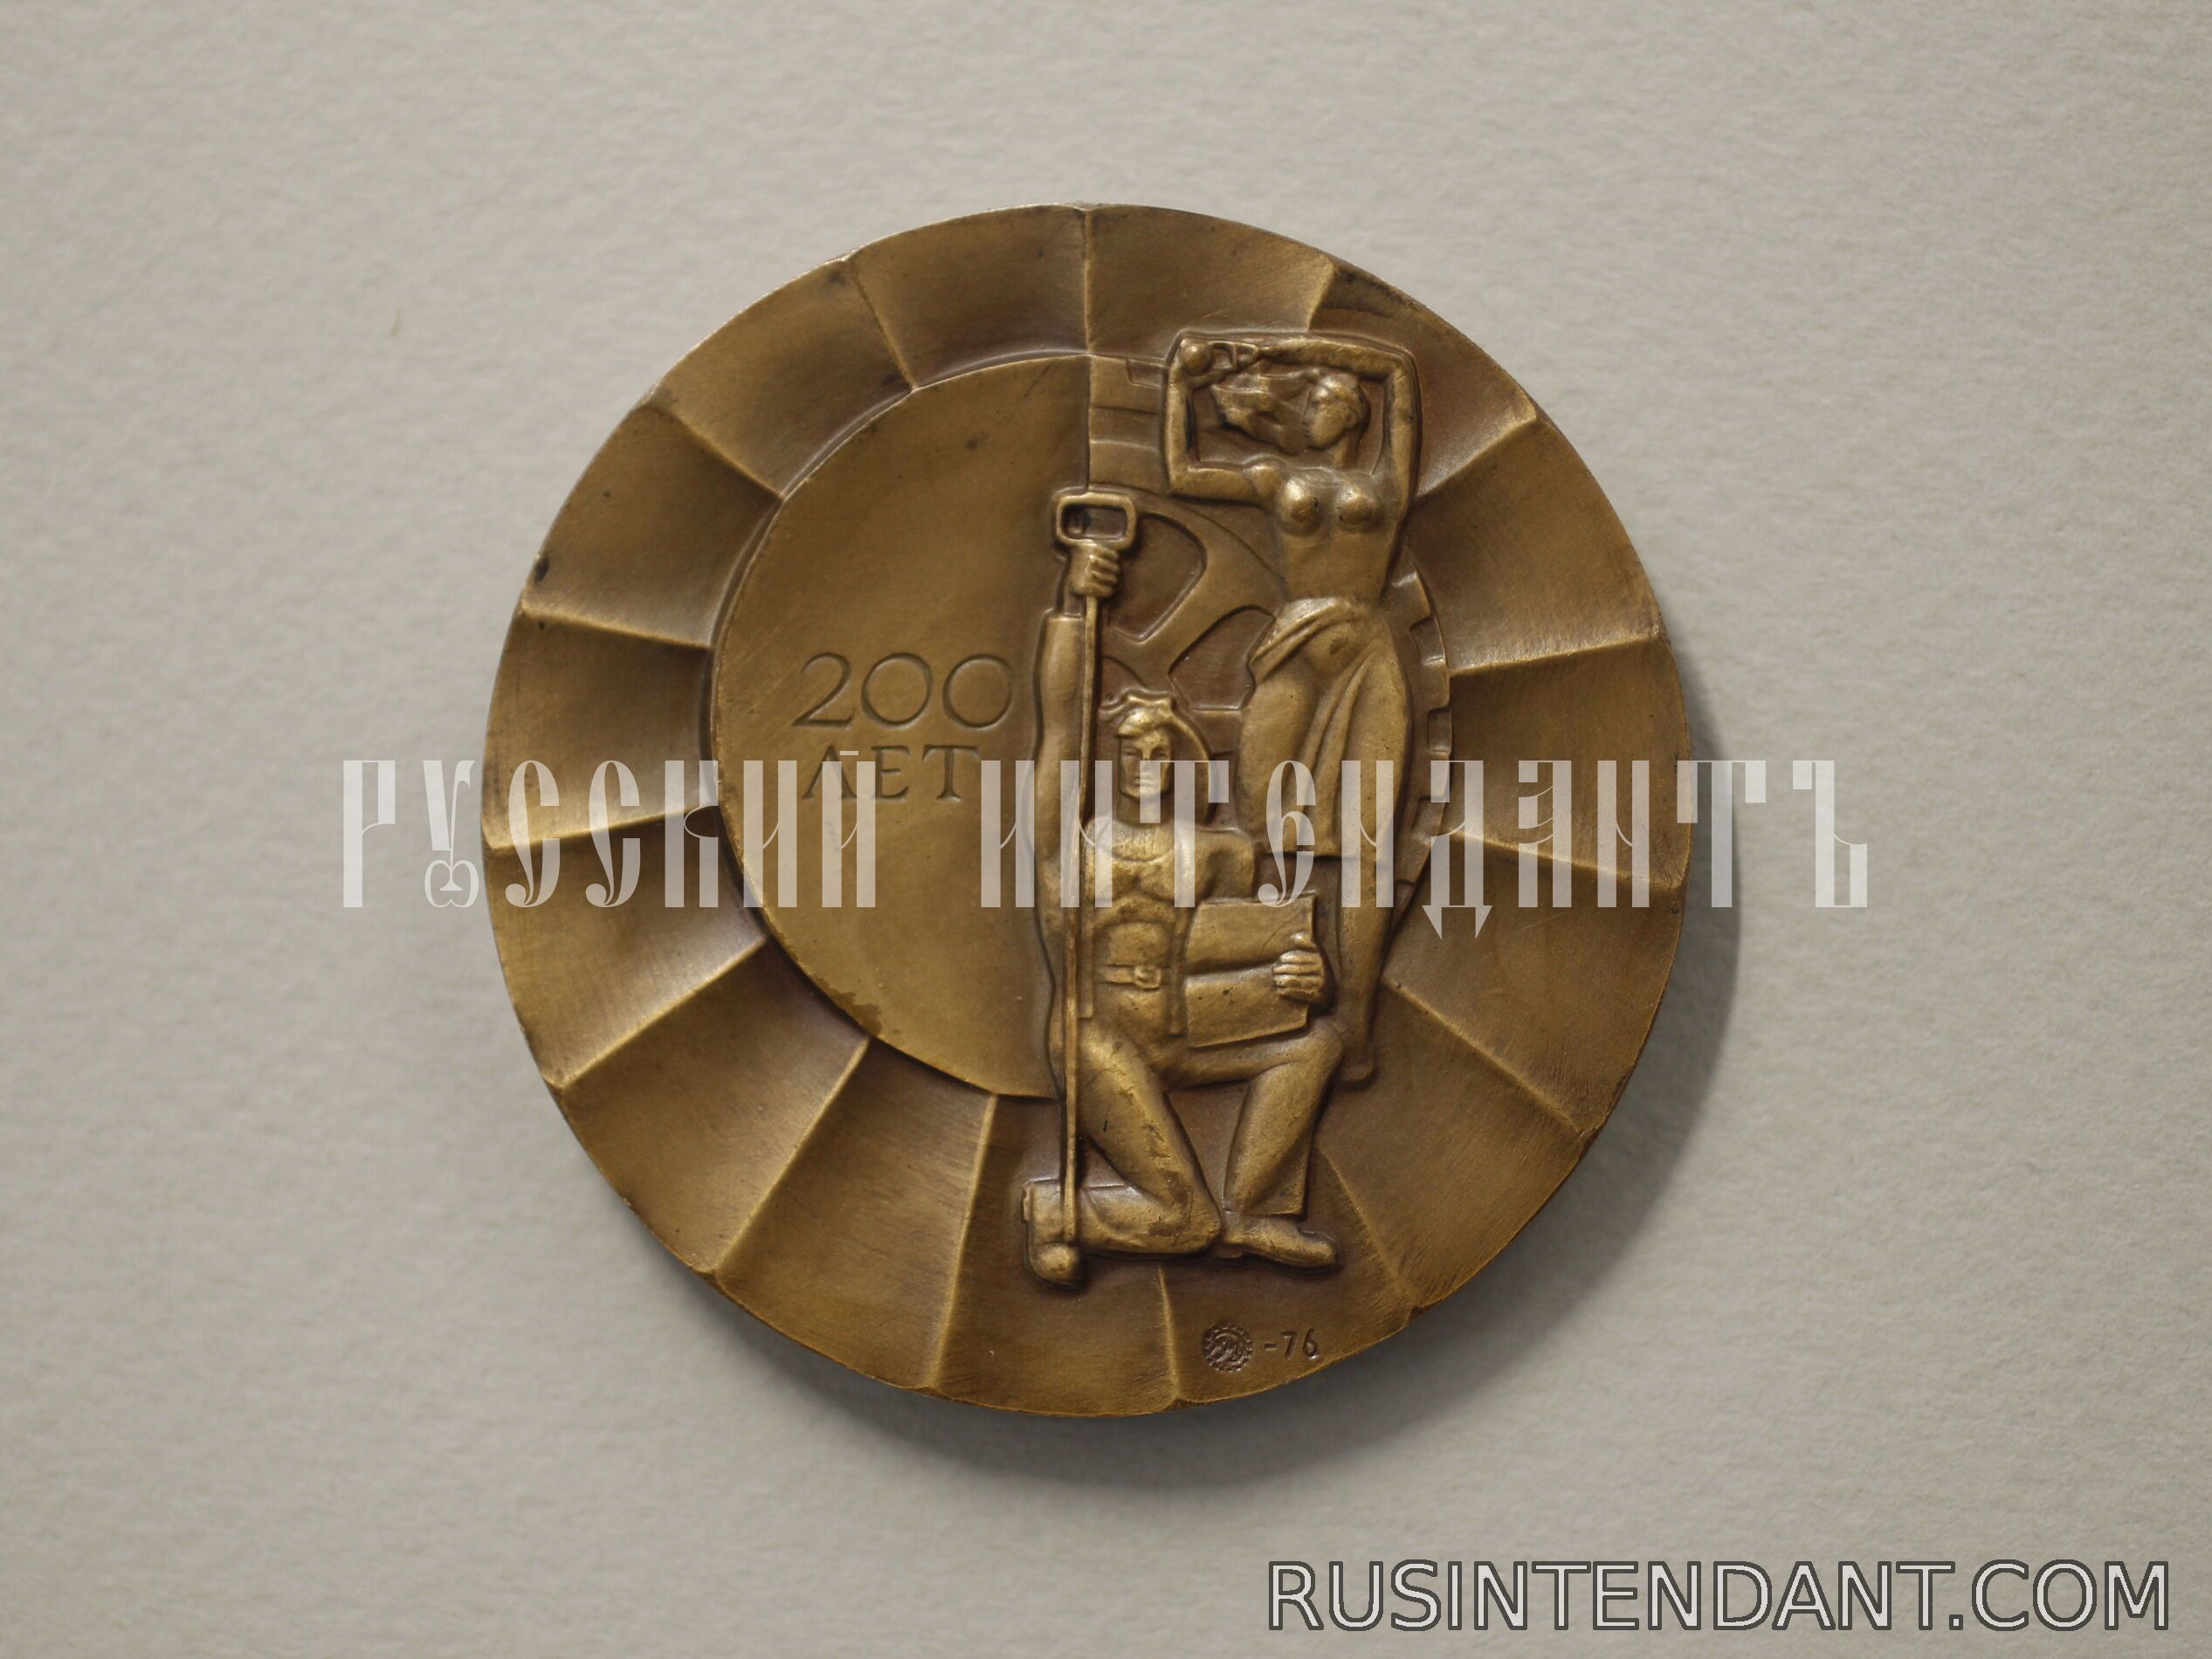 Фото 2: Настольная медаль «200 лет со дня основания Днепропетровска» 